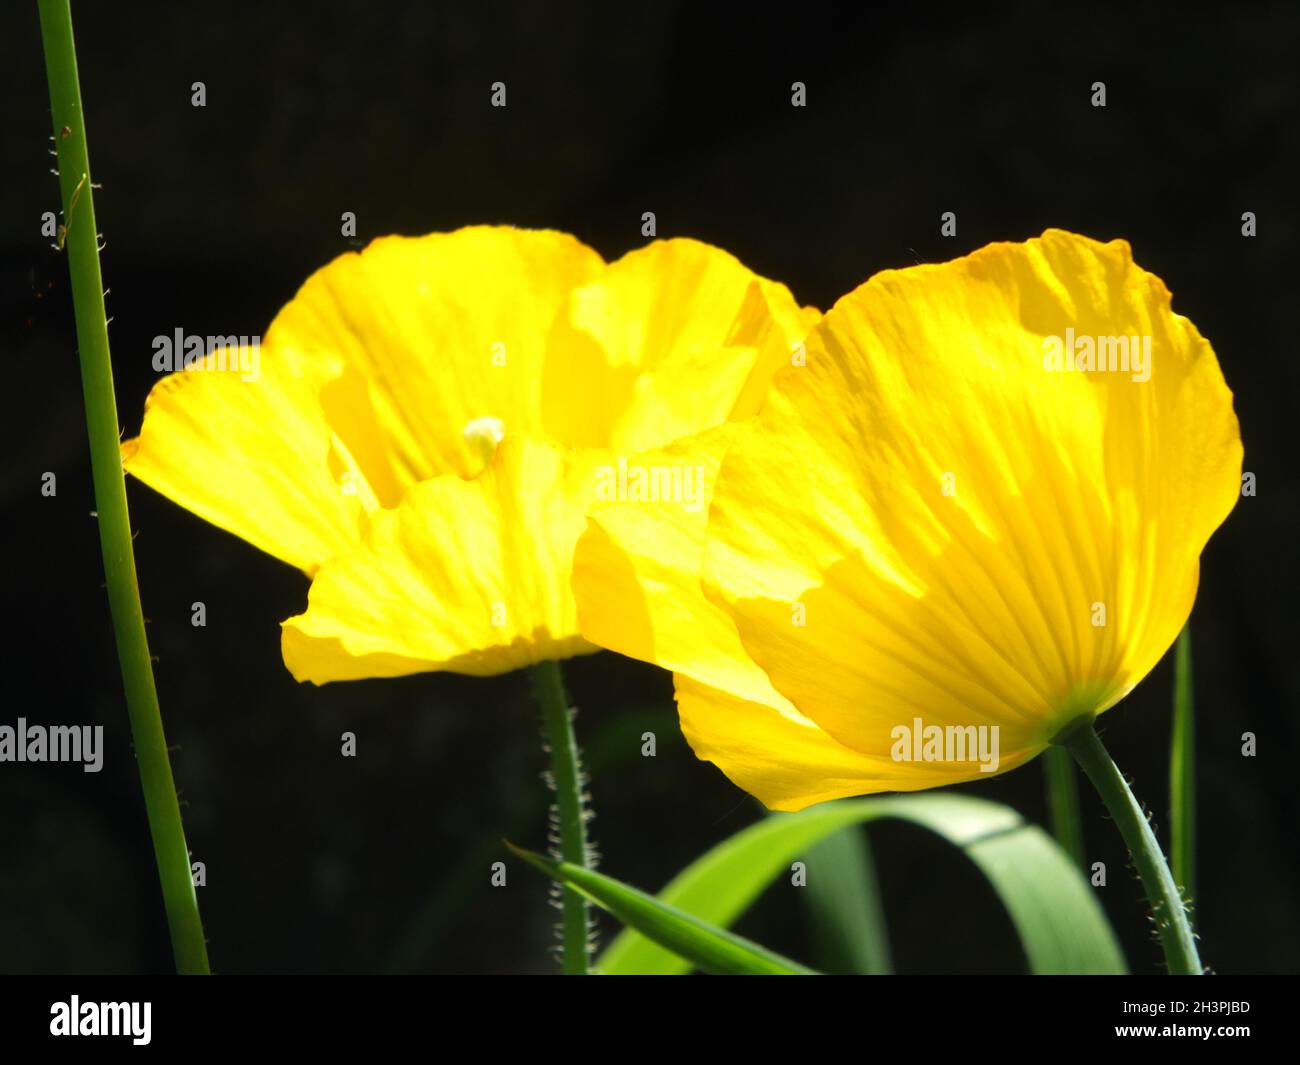 Gros plan de deux fleurs de pavot gallois jaune vif sur fond noir Banque D'Images